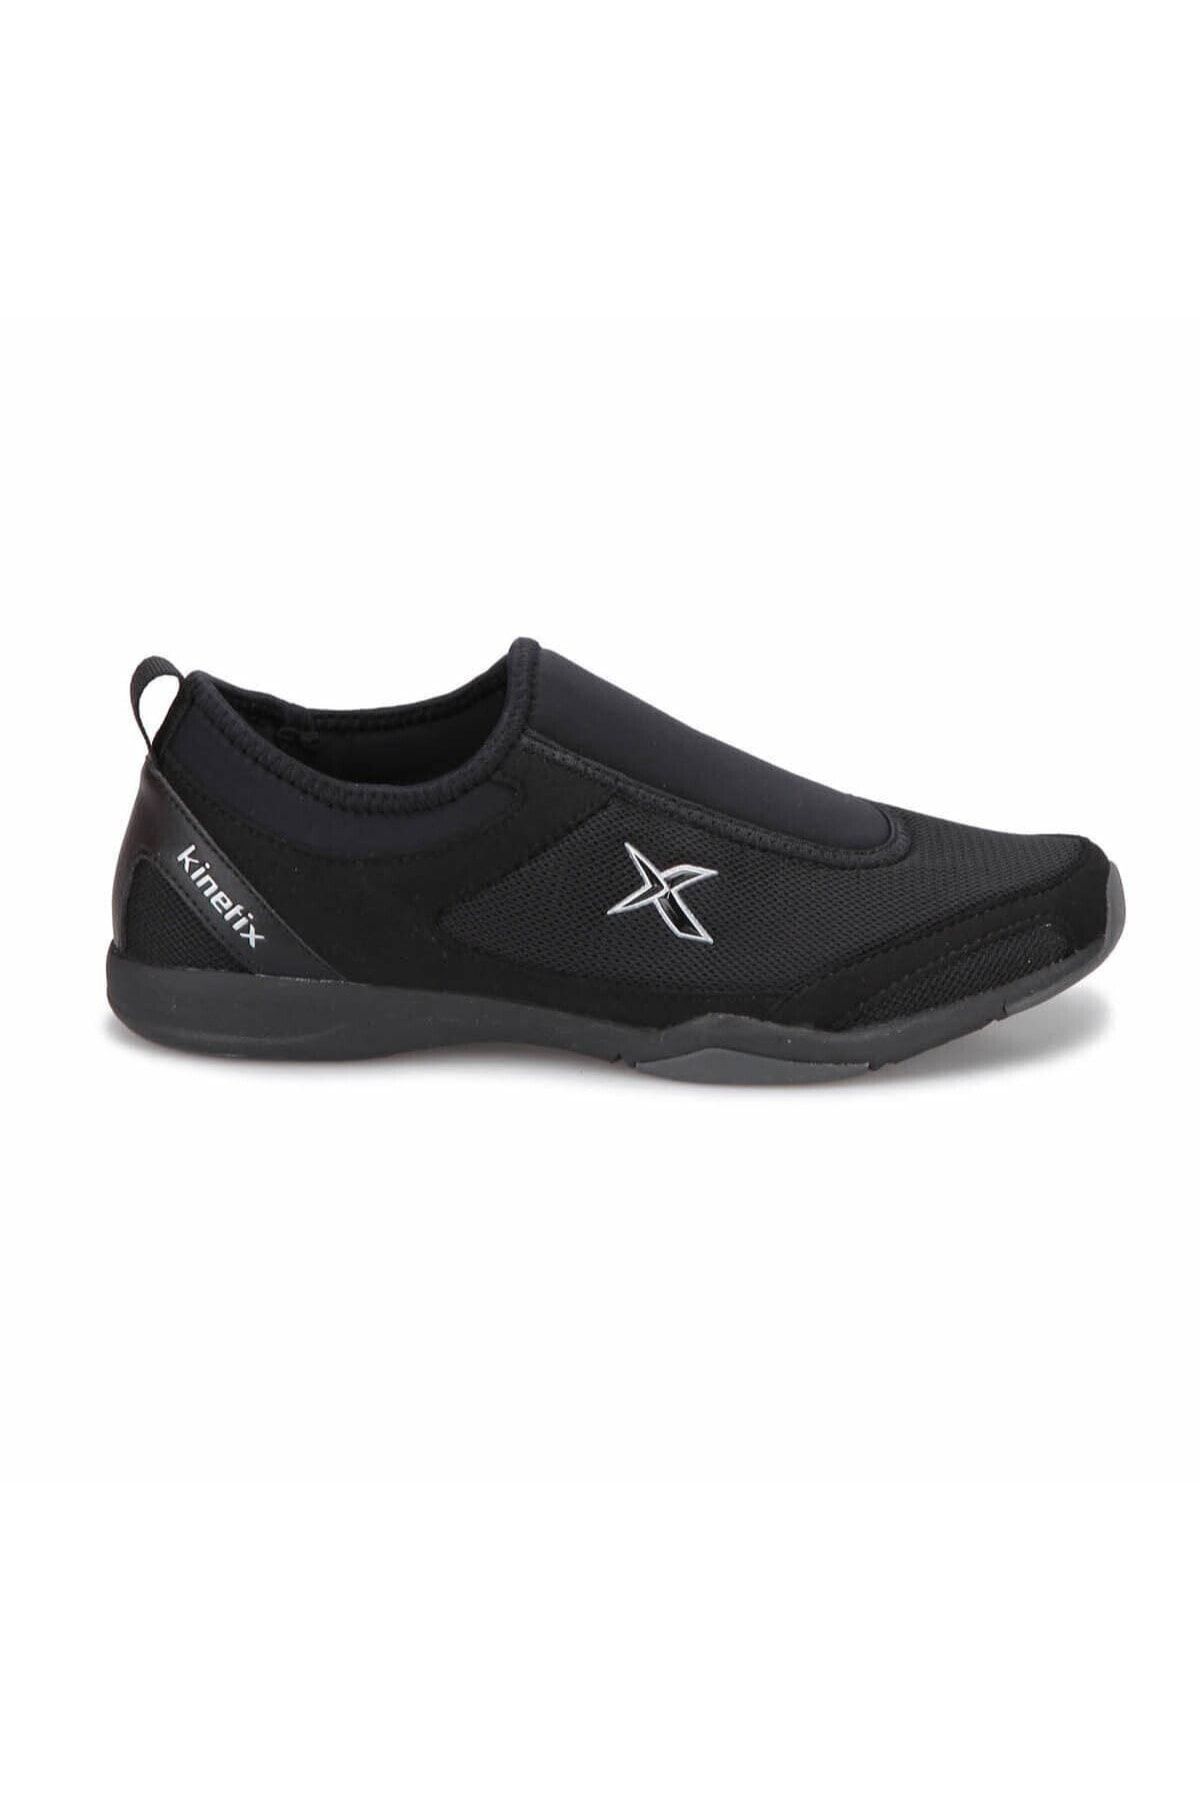 Kinetix Macon Unisex Günlük Bağcıksız Spor Ayakkabı 36/45 -1